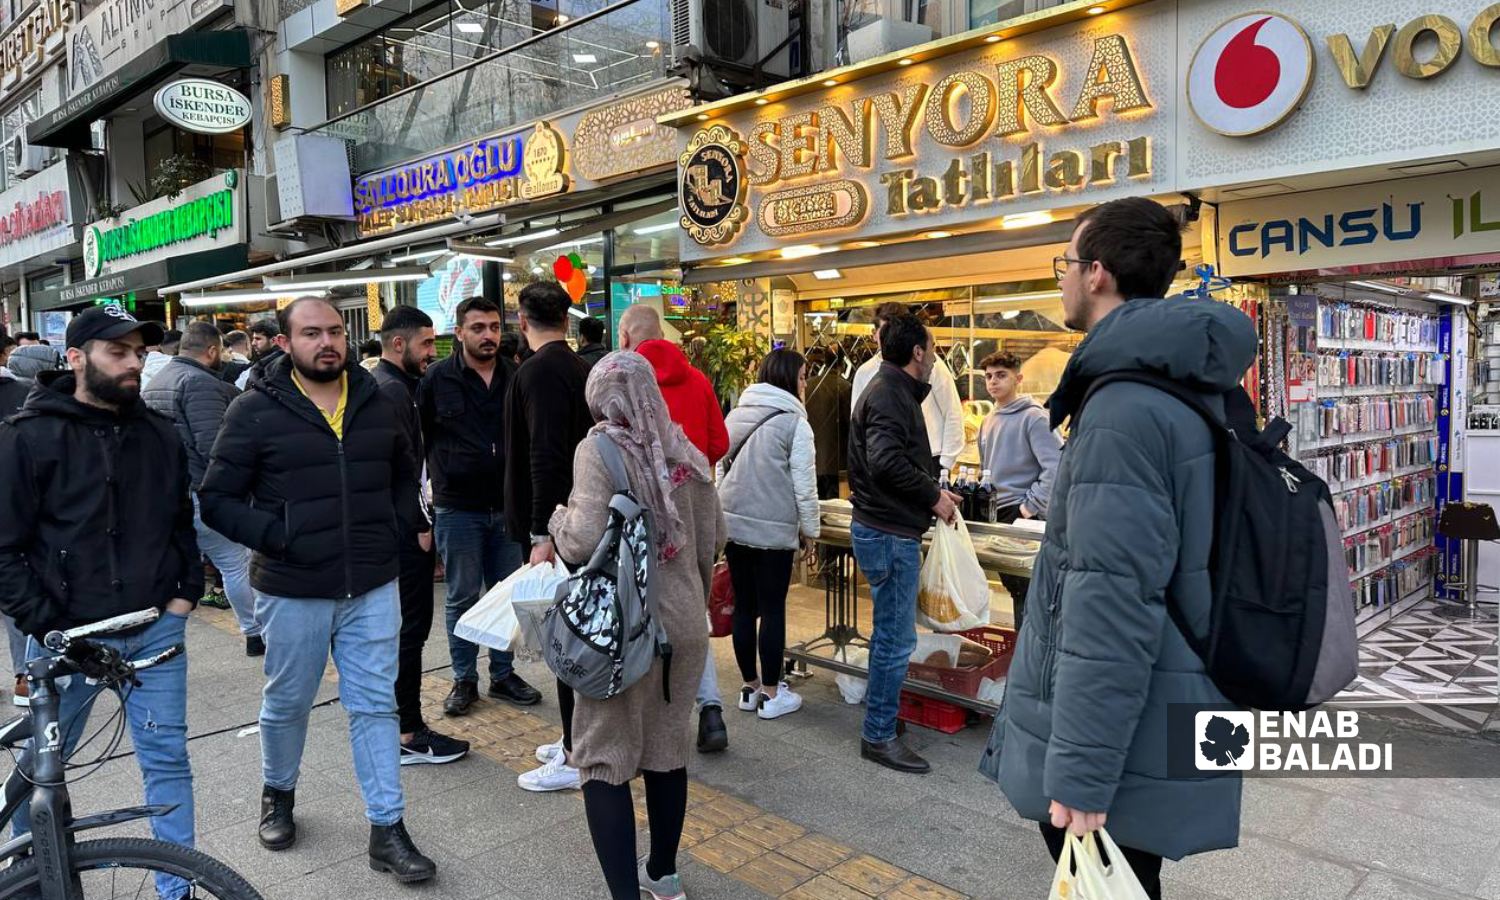 ازدحام لشراء الخبز الرمضاني (المعروك) والمشروبات أمام أحد المحال السورية في اسطنبول- 23 من آذار 2023 (عنب بلدي)